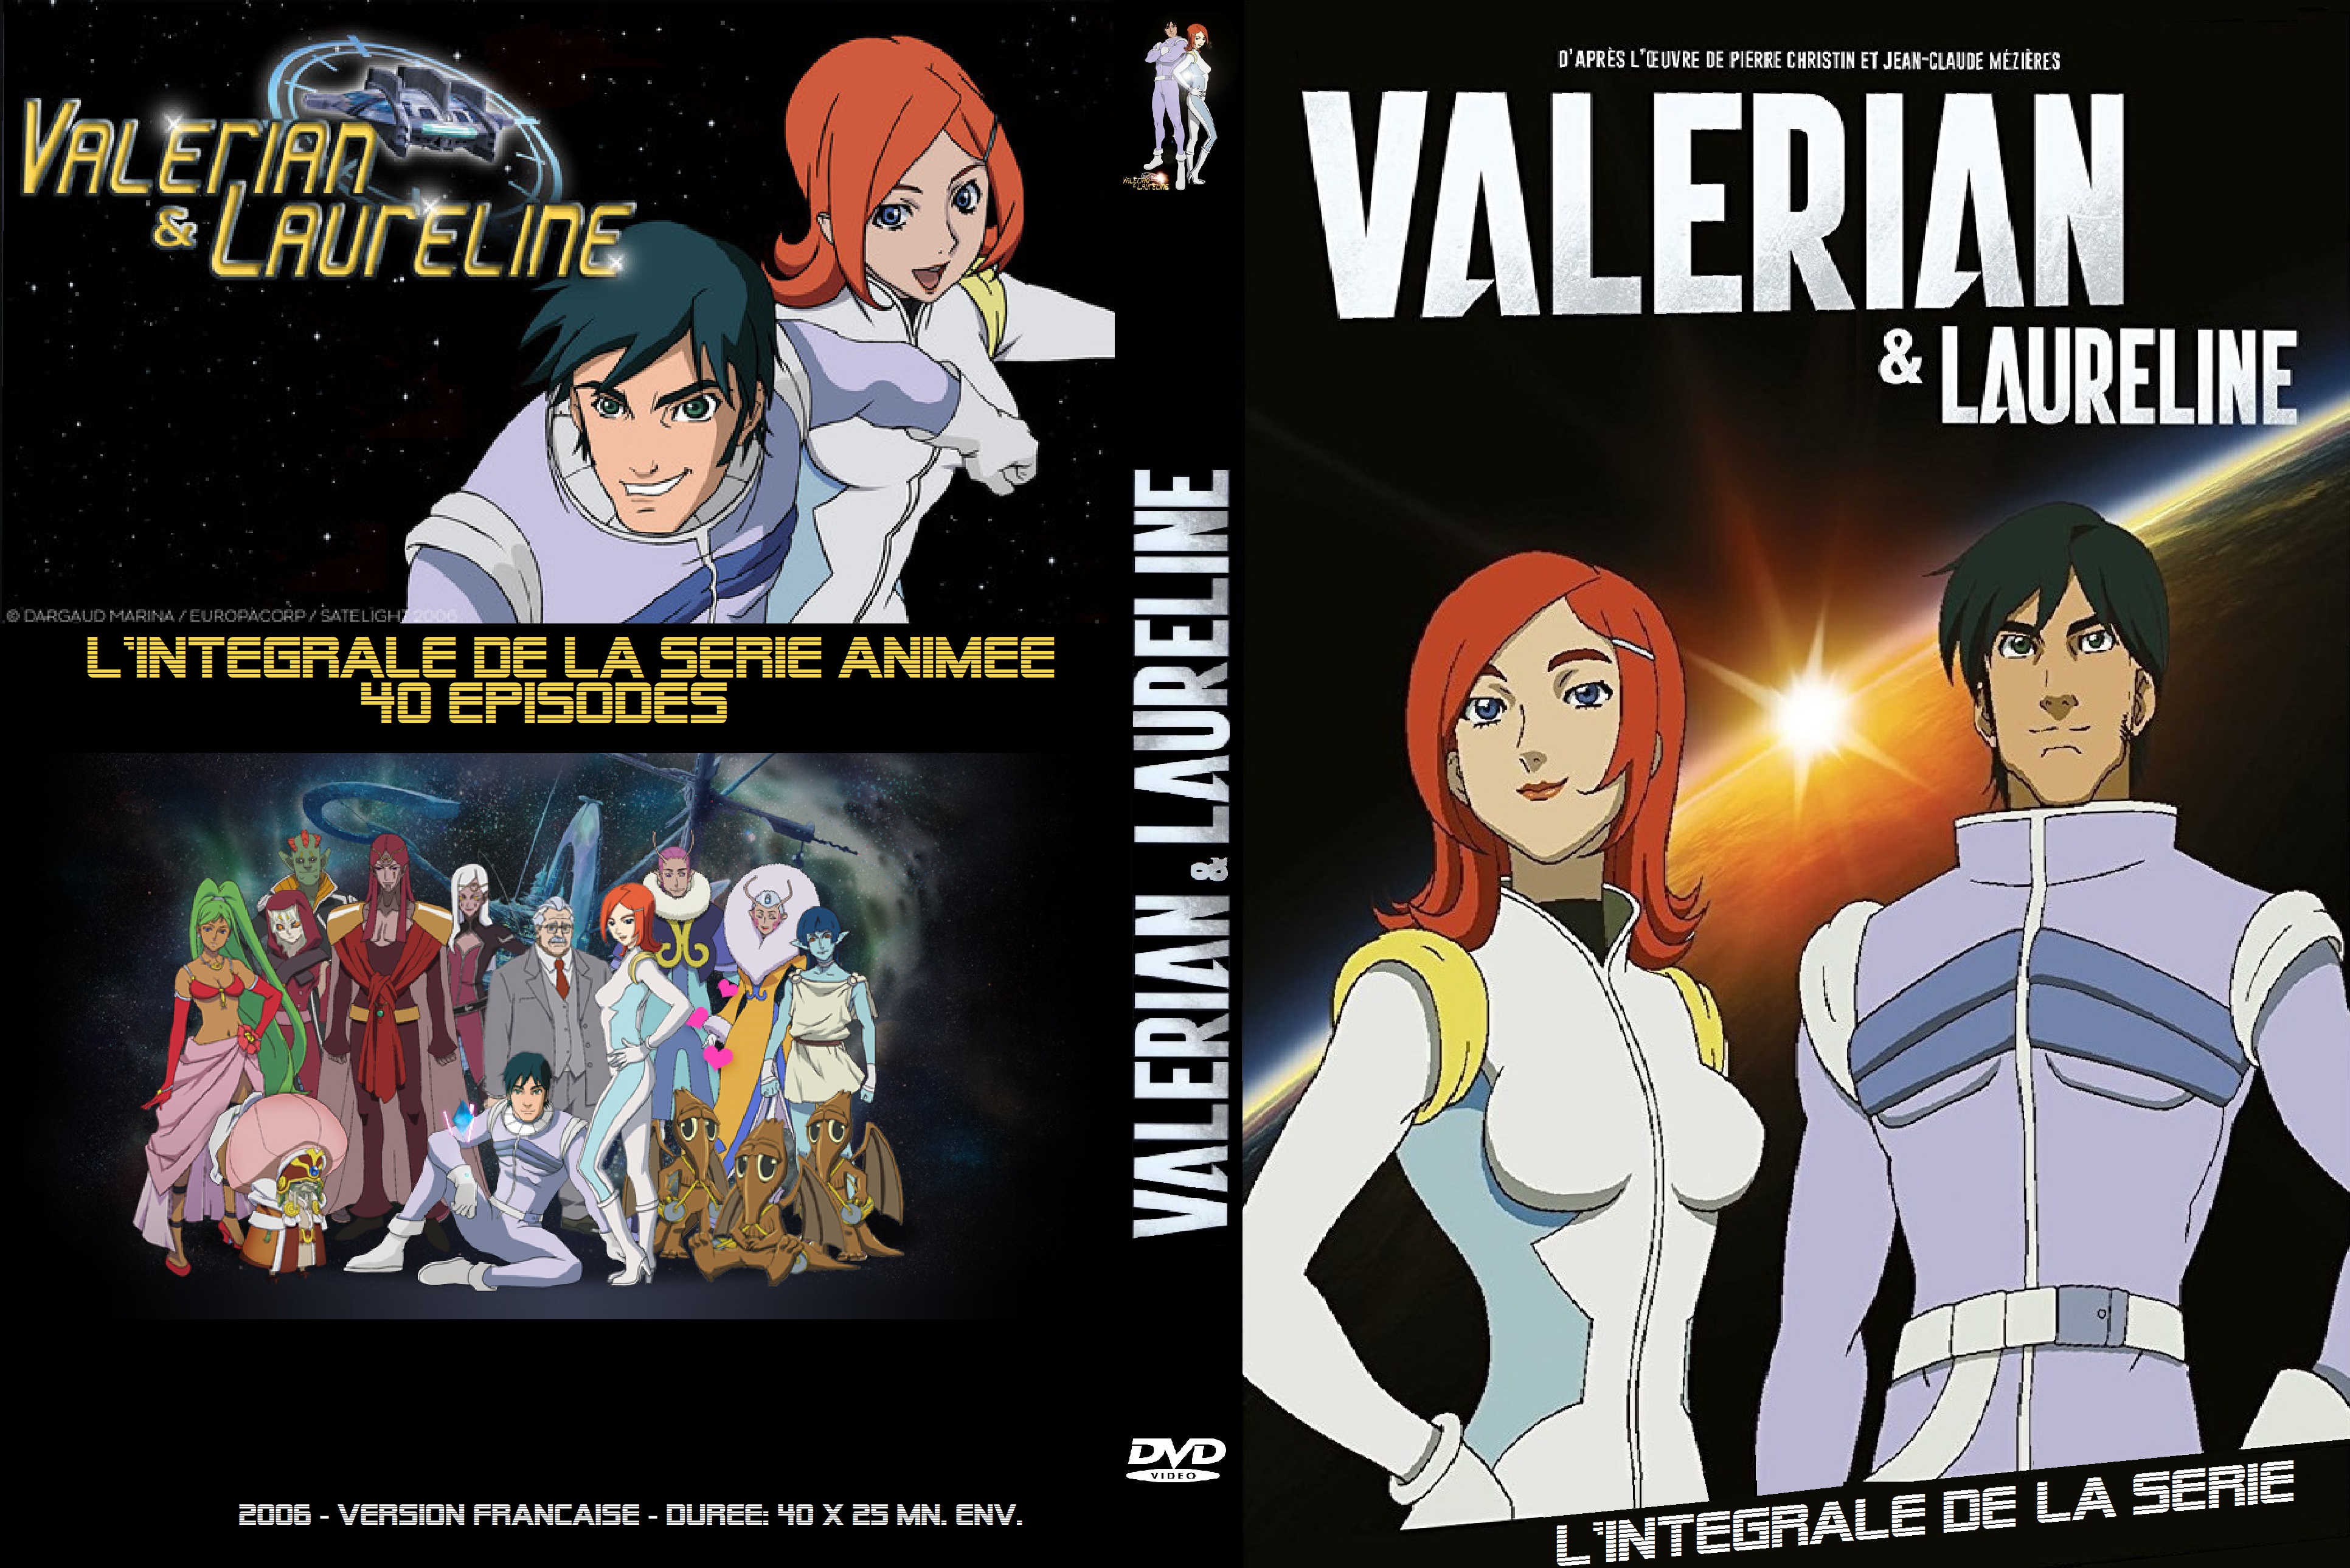 Jaquette DVD Valerian & Laureline custom